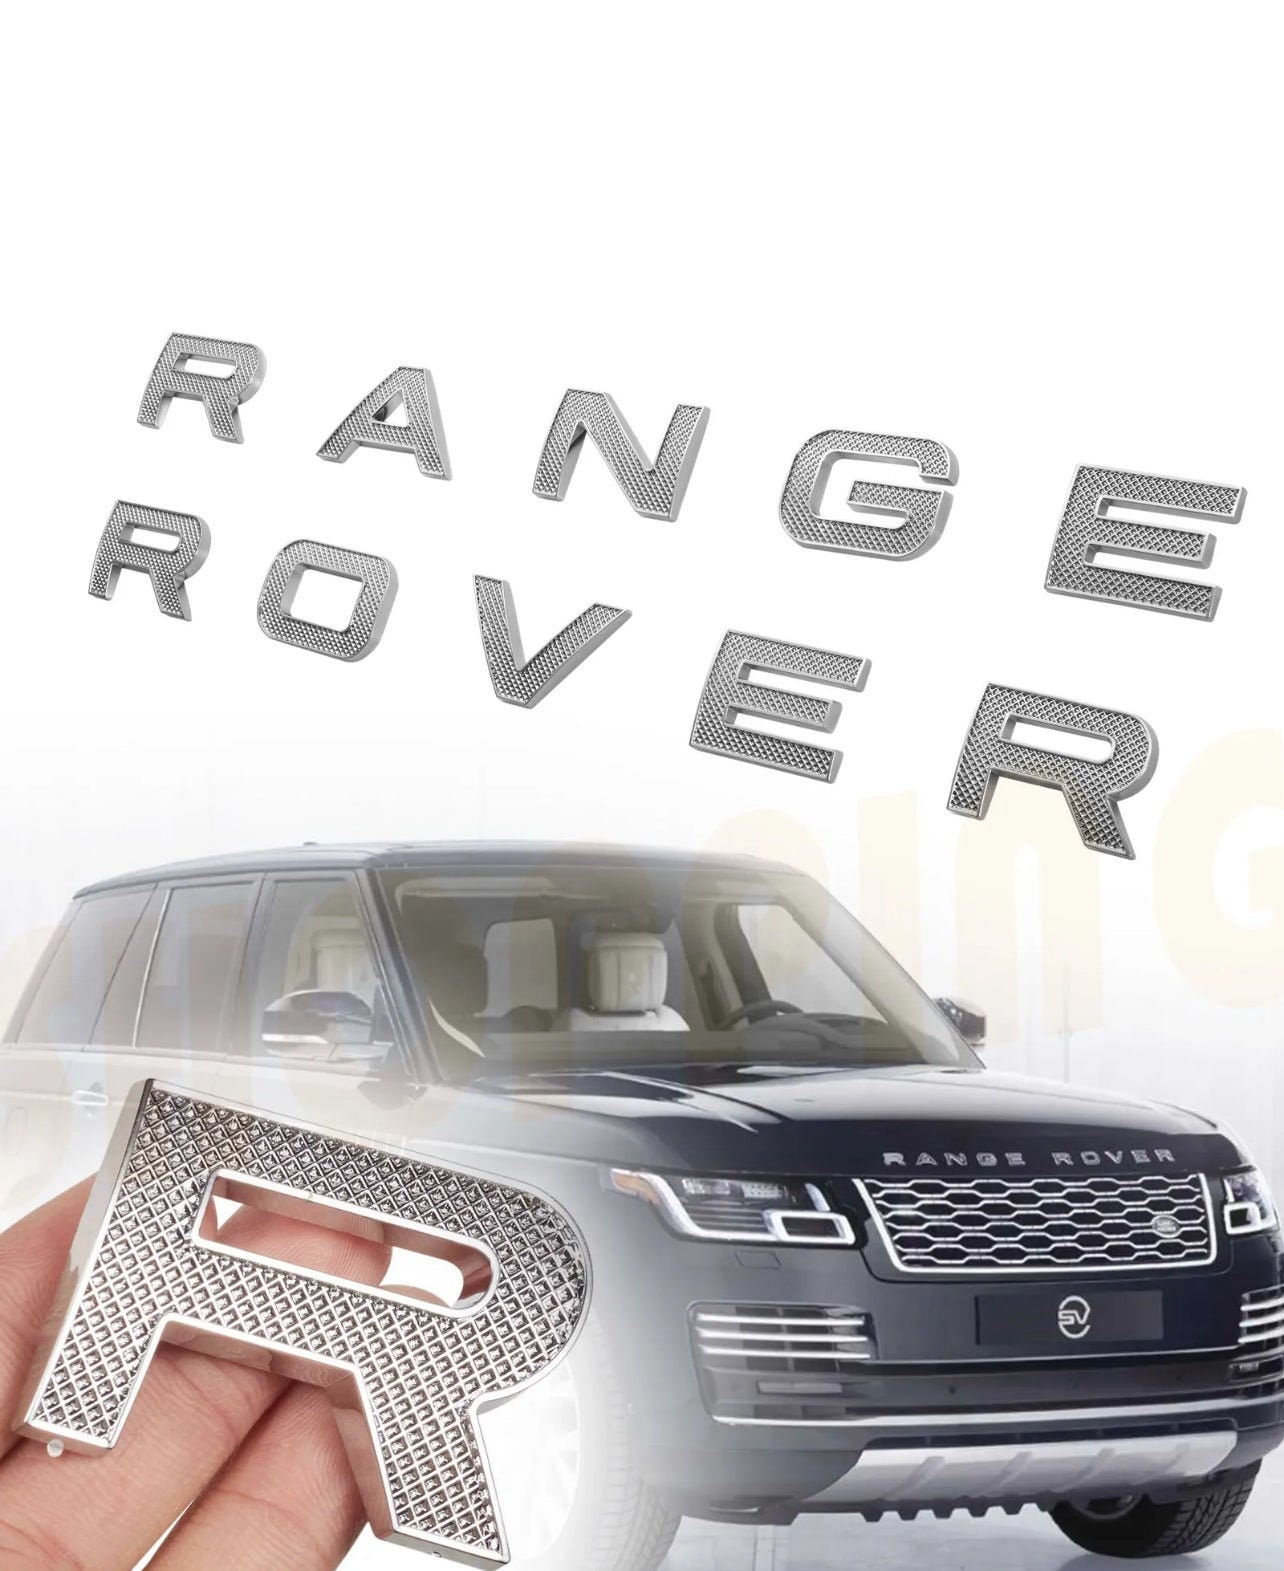 Range rover emblem - .de